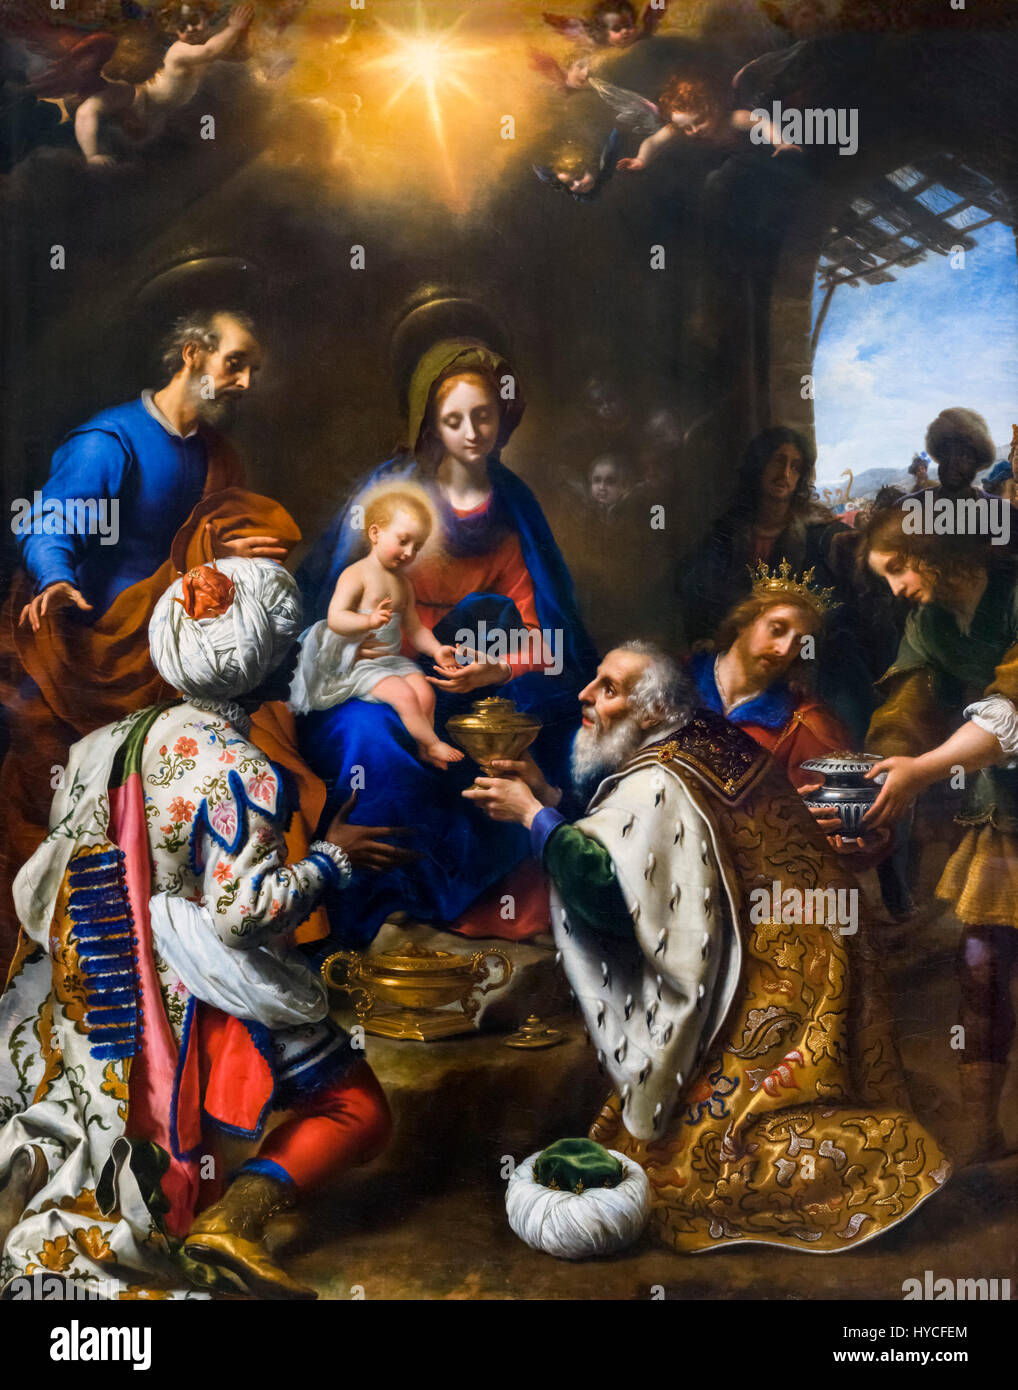 Escena de la natividad. La adoración de los Reyes por Carlo Dolci (1616-1686), óleo sobre lienzo, 1649. El niño Jesús recibiendo regalos de los Reyes Magos. Foto de stock